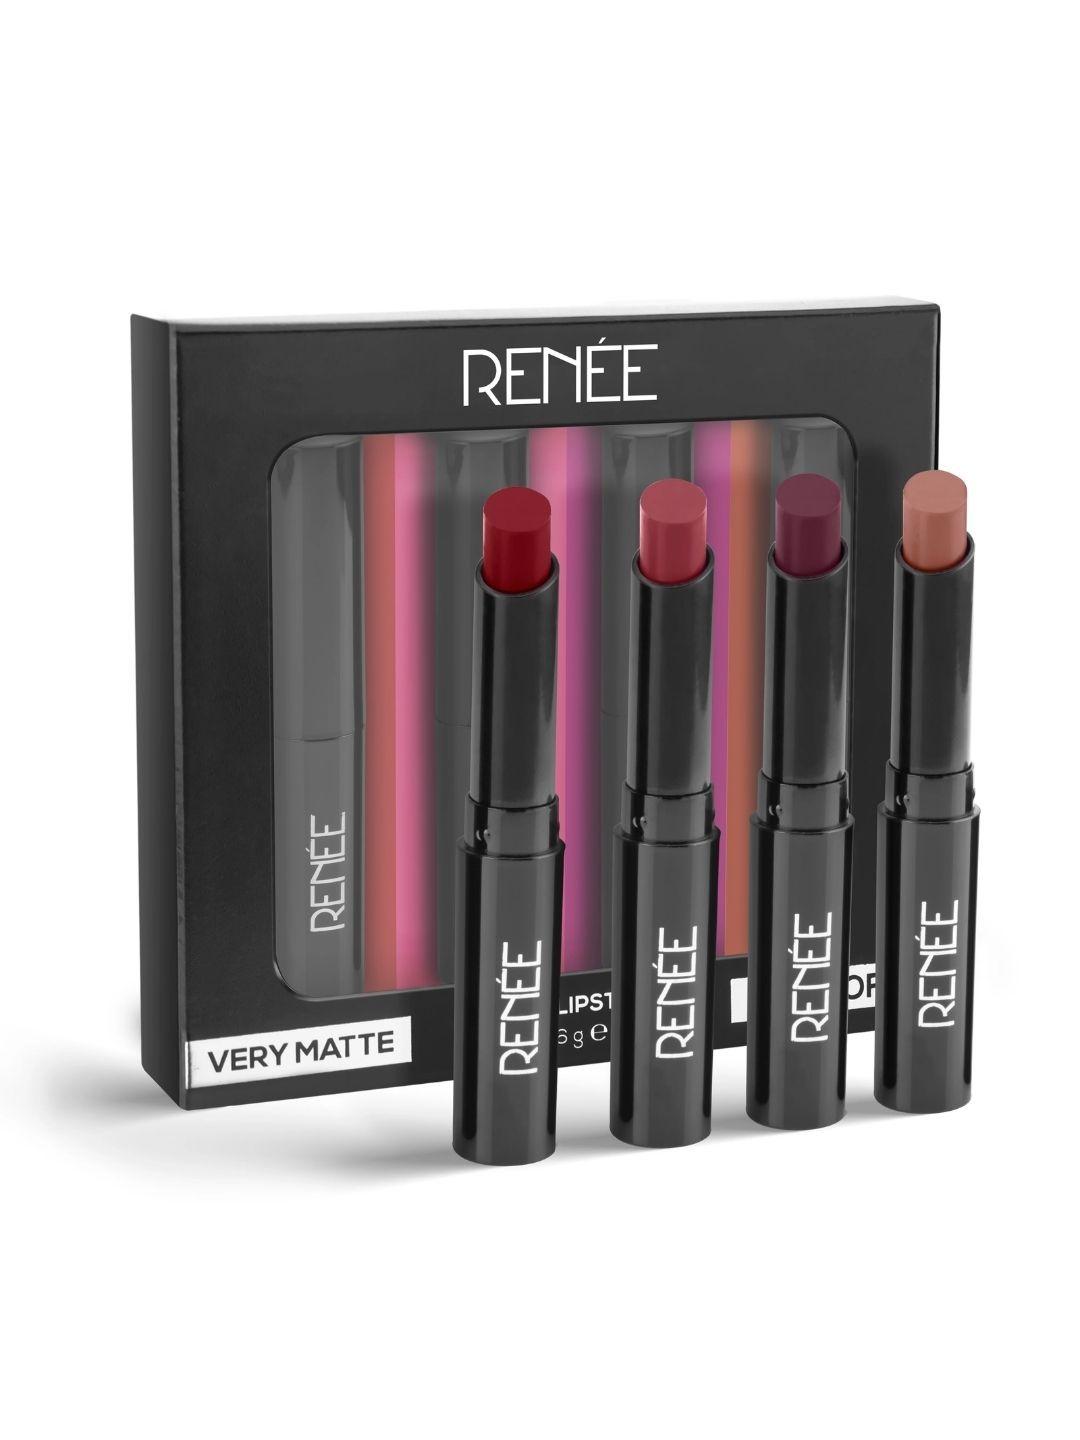 renee set of 4 very matte long-lasting velvet smooth finish lipsticks - 1.6g each